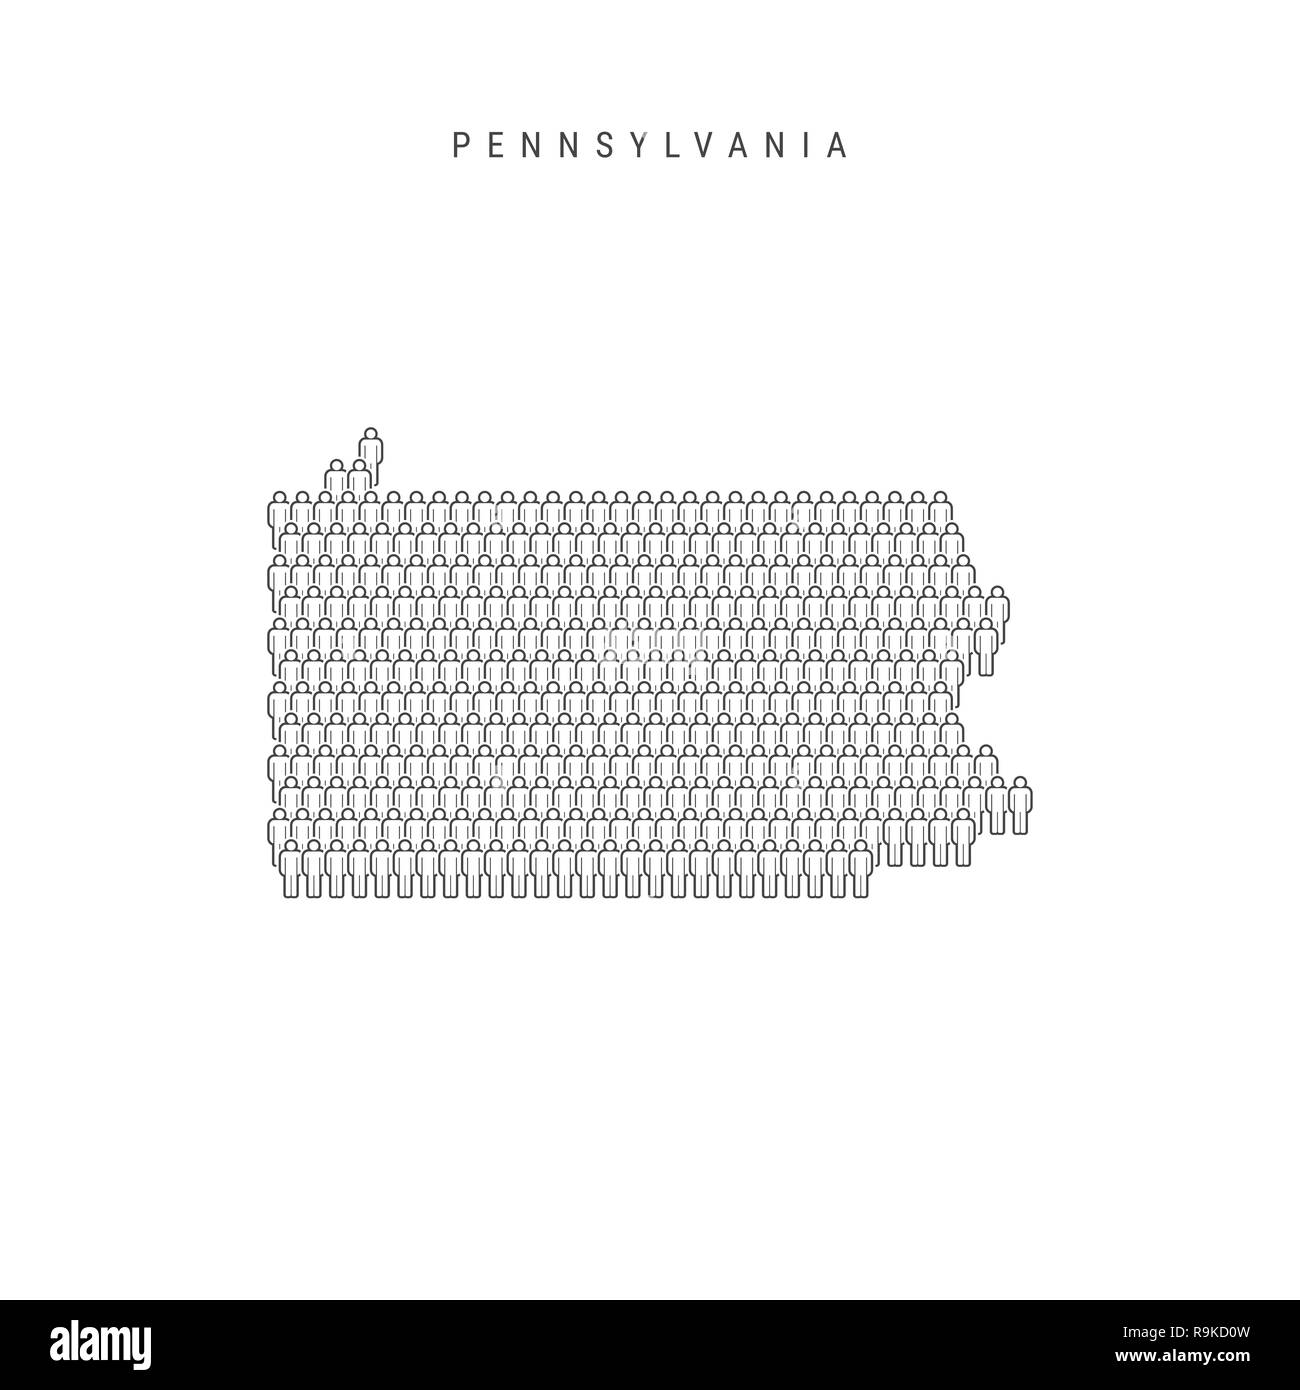 Leute Karte von Pennsylvania, US-Staat. Stilisierte Silhouette, Leute in der Form einer Karte von Pennsylvania. Pennsylvania Bevölkerung. Abbildung I Stockfoto